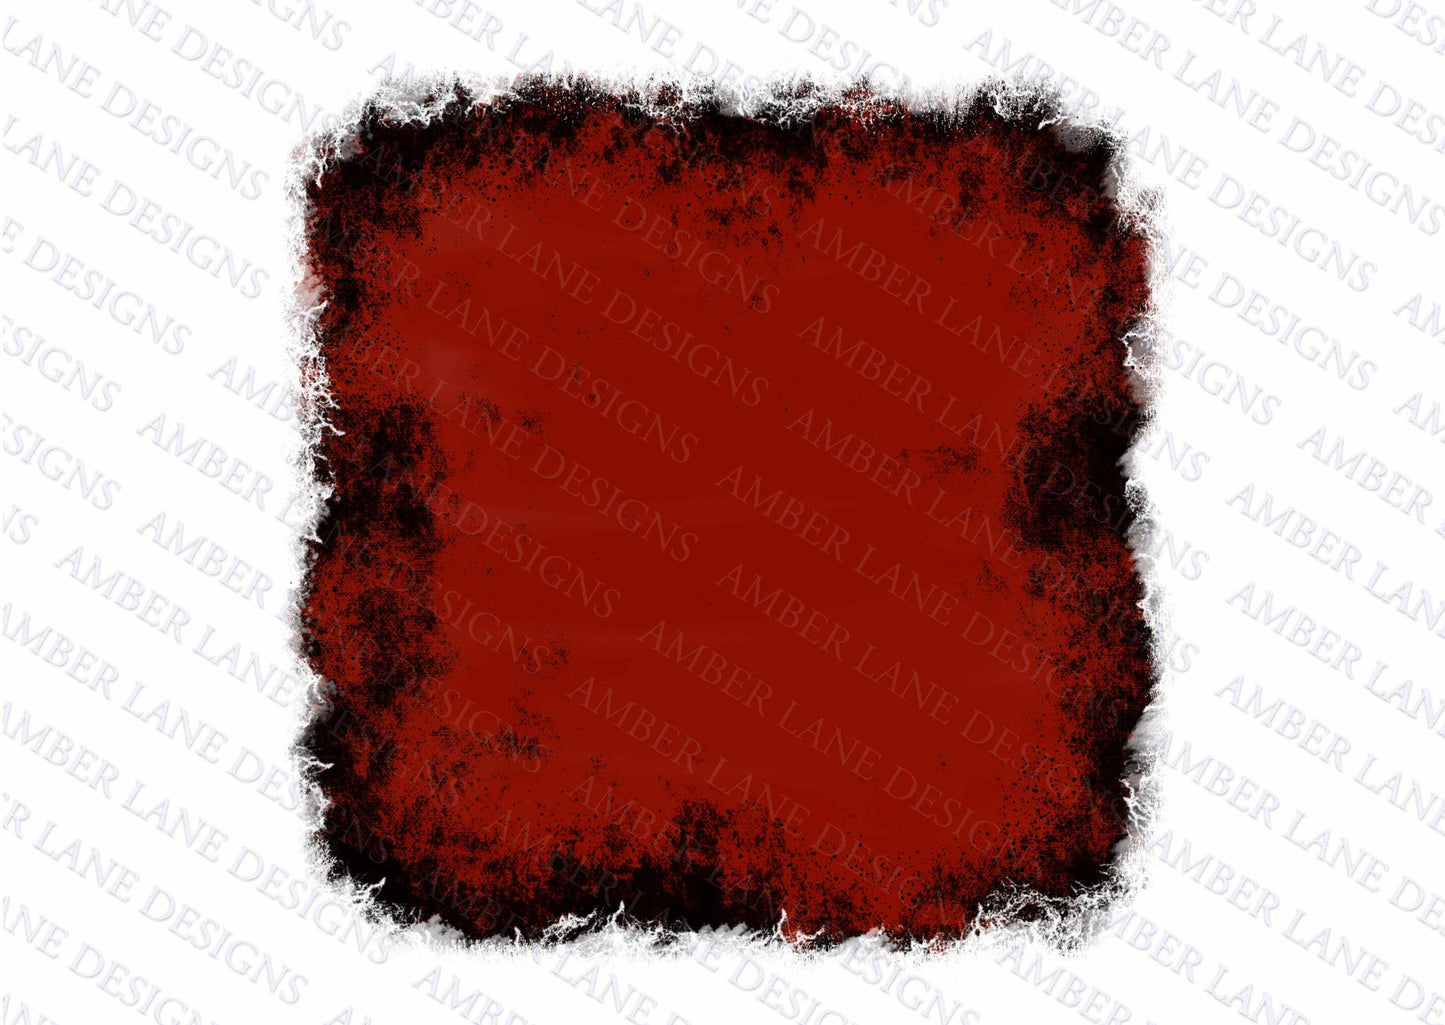 Red grunge background, Halloween background, backsplash frame ,png file only tumbler wrap